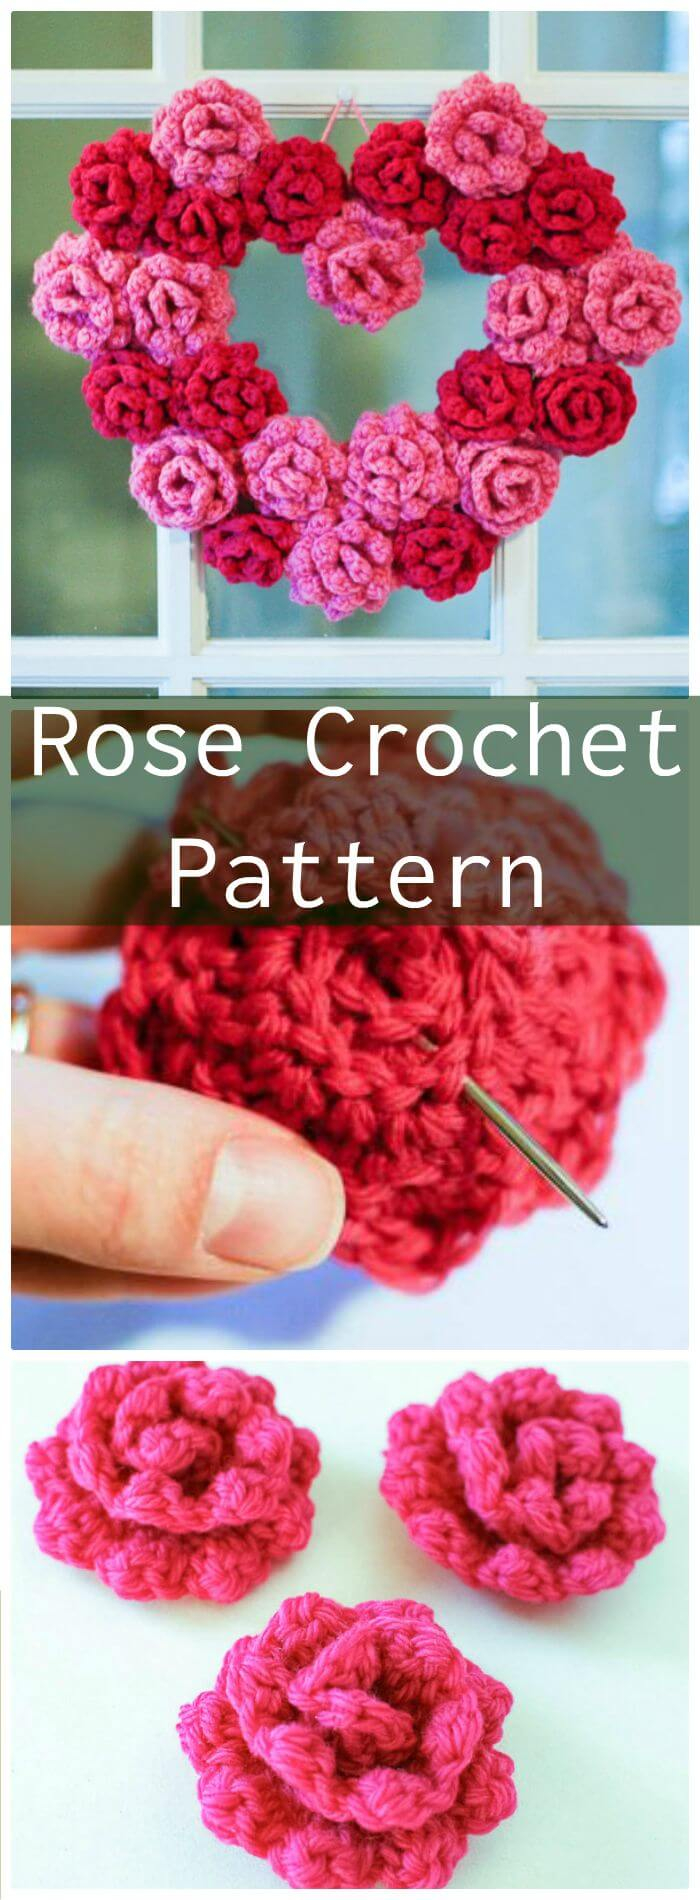 Simple Crochet Rose Pattern Crochet Flowers 90 Free Crochet Flower Patterns Diy Crafts